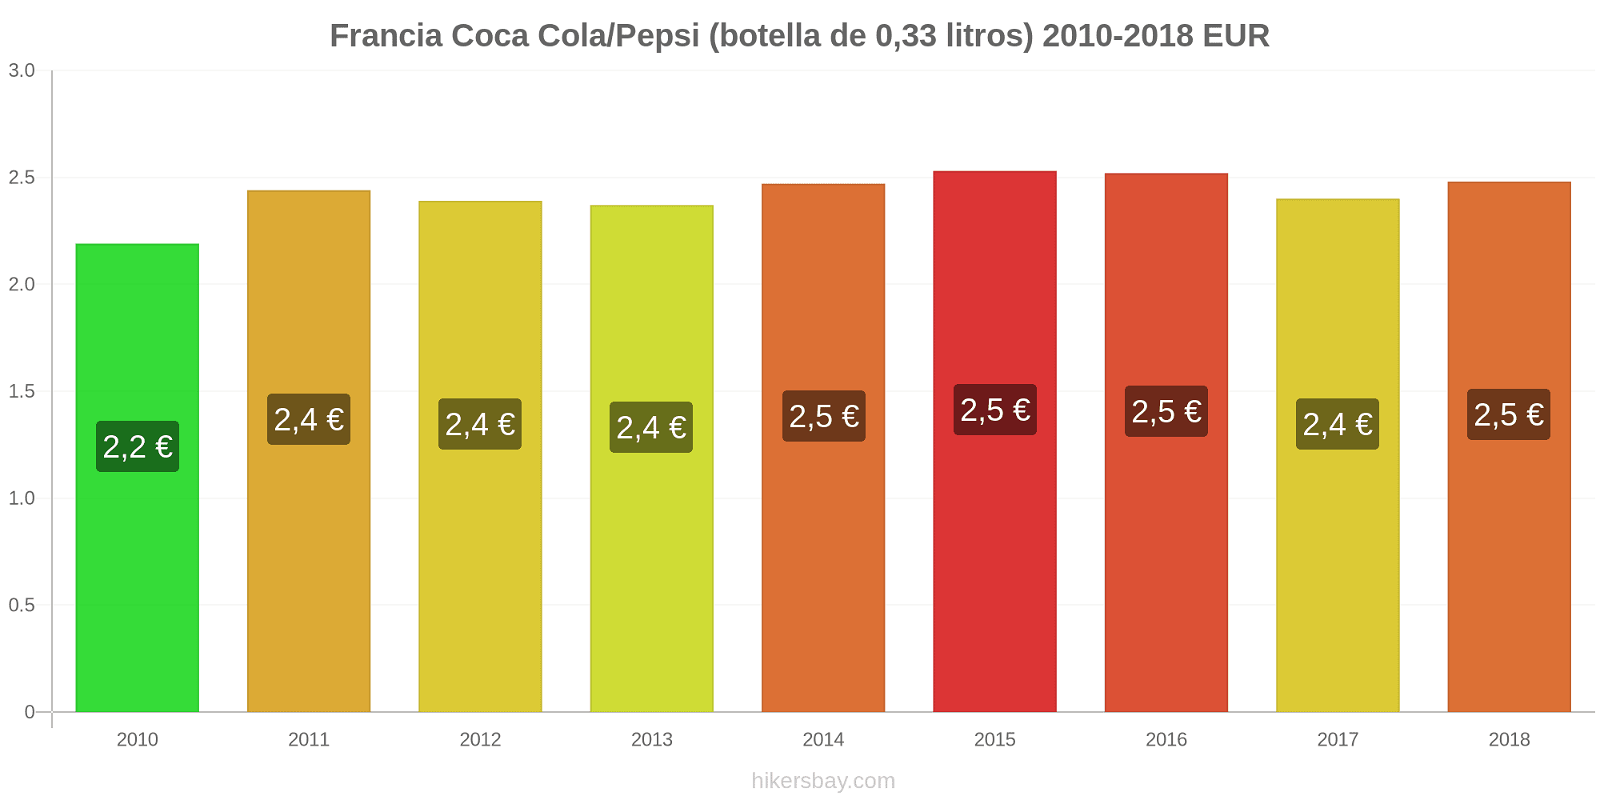 Francia cambios de precios Coca-Cola/Pepsi (botella de 0.33 litros) hikersbay.com